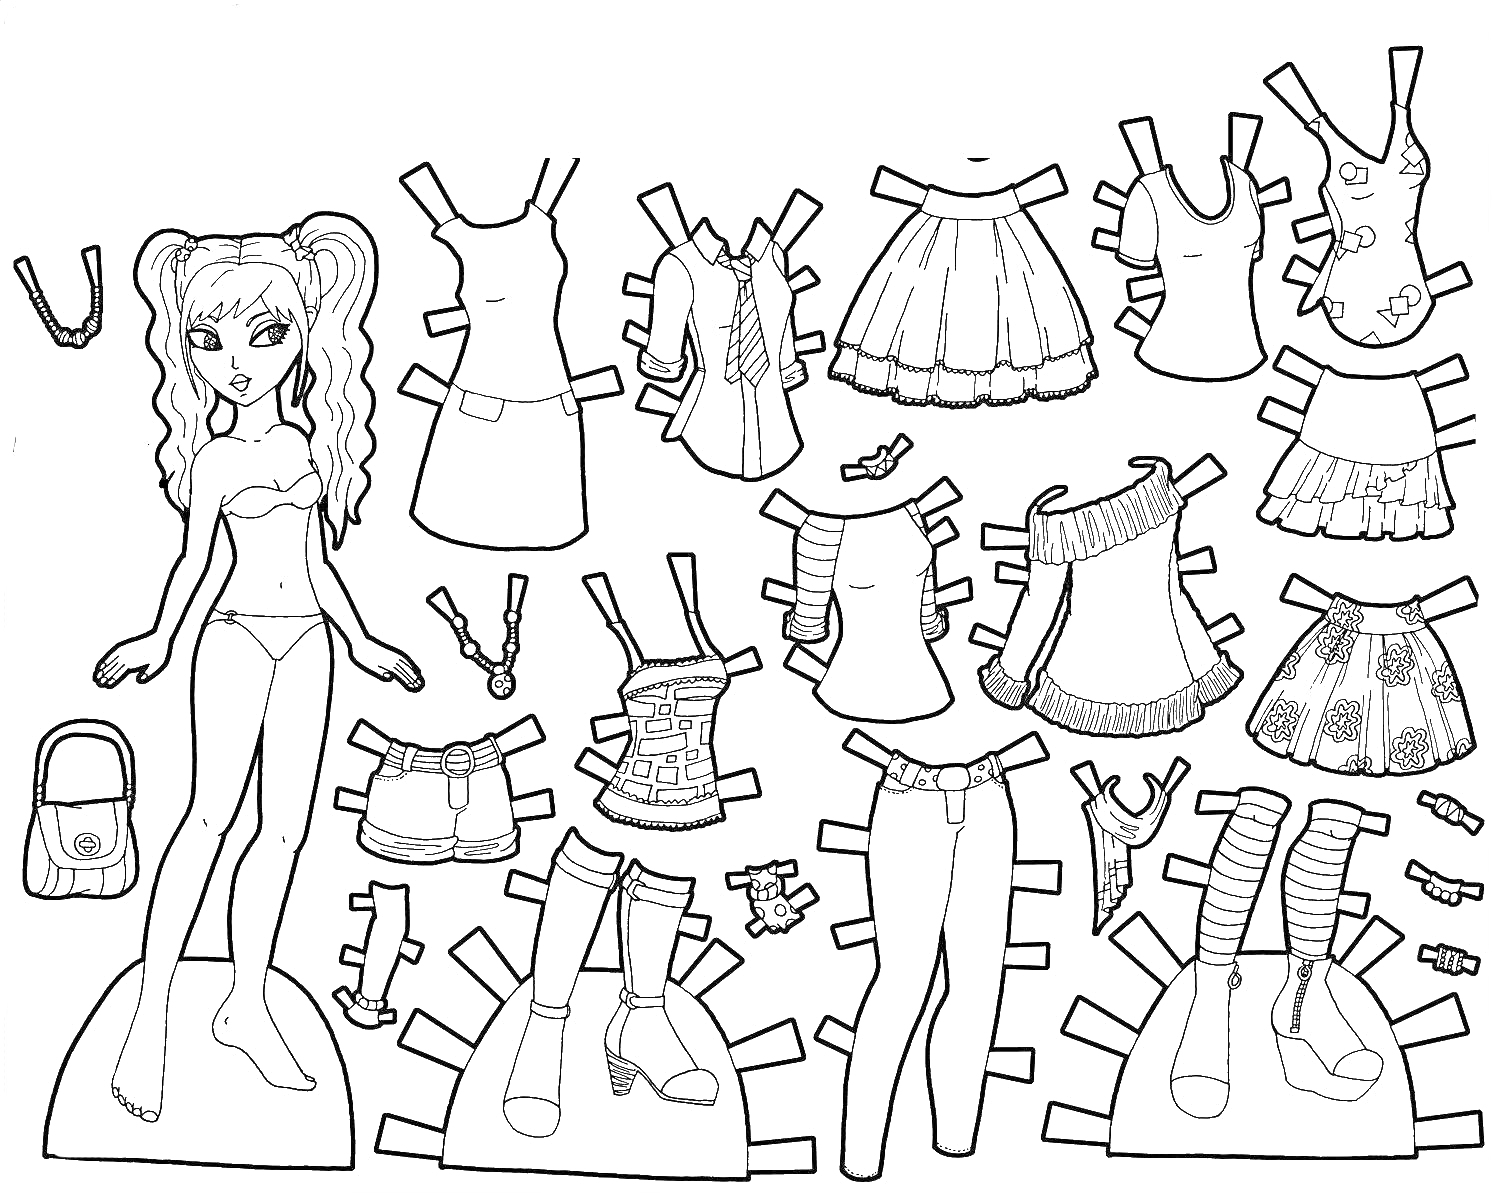 Раскраска Бумажная кукла с набором одежды, включая платья, юбки, майки, сапоги, балетки, колготки, головной убор и рюкзак.